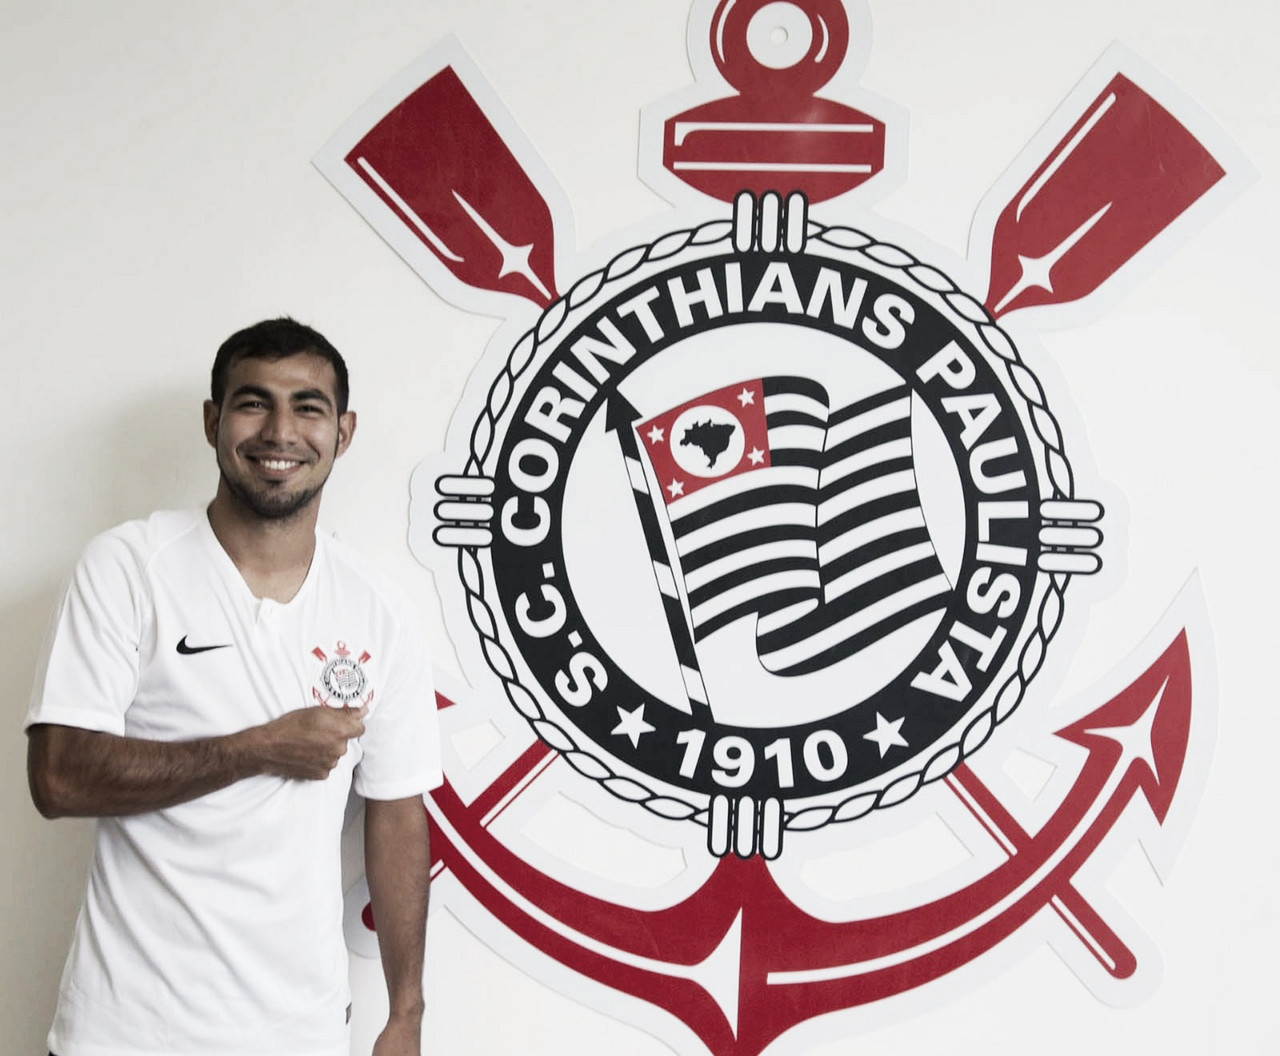 Após entraves burocráticos, Corinthians oficializa contratação de Sornoza